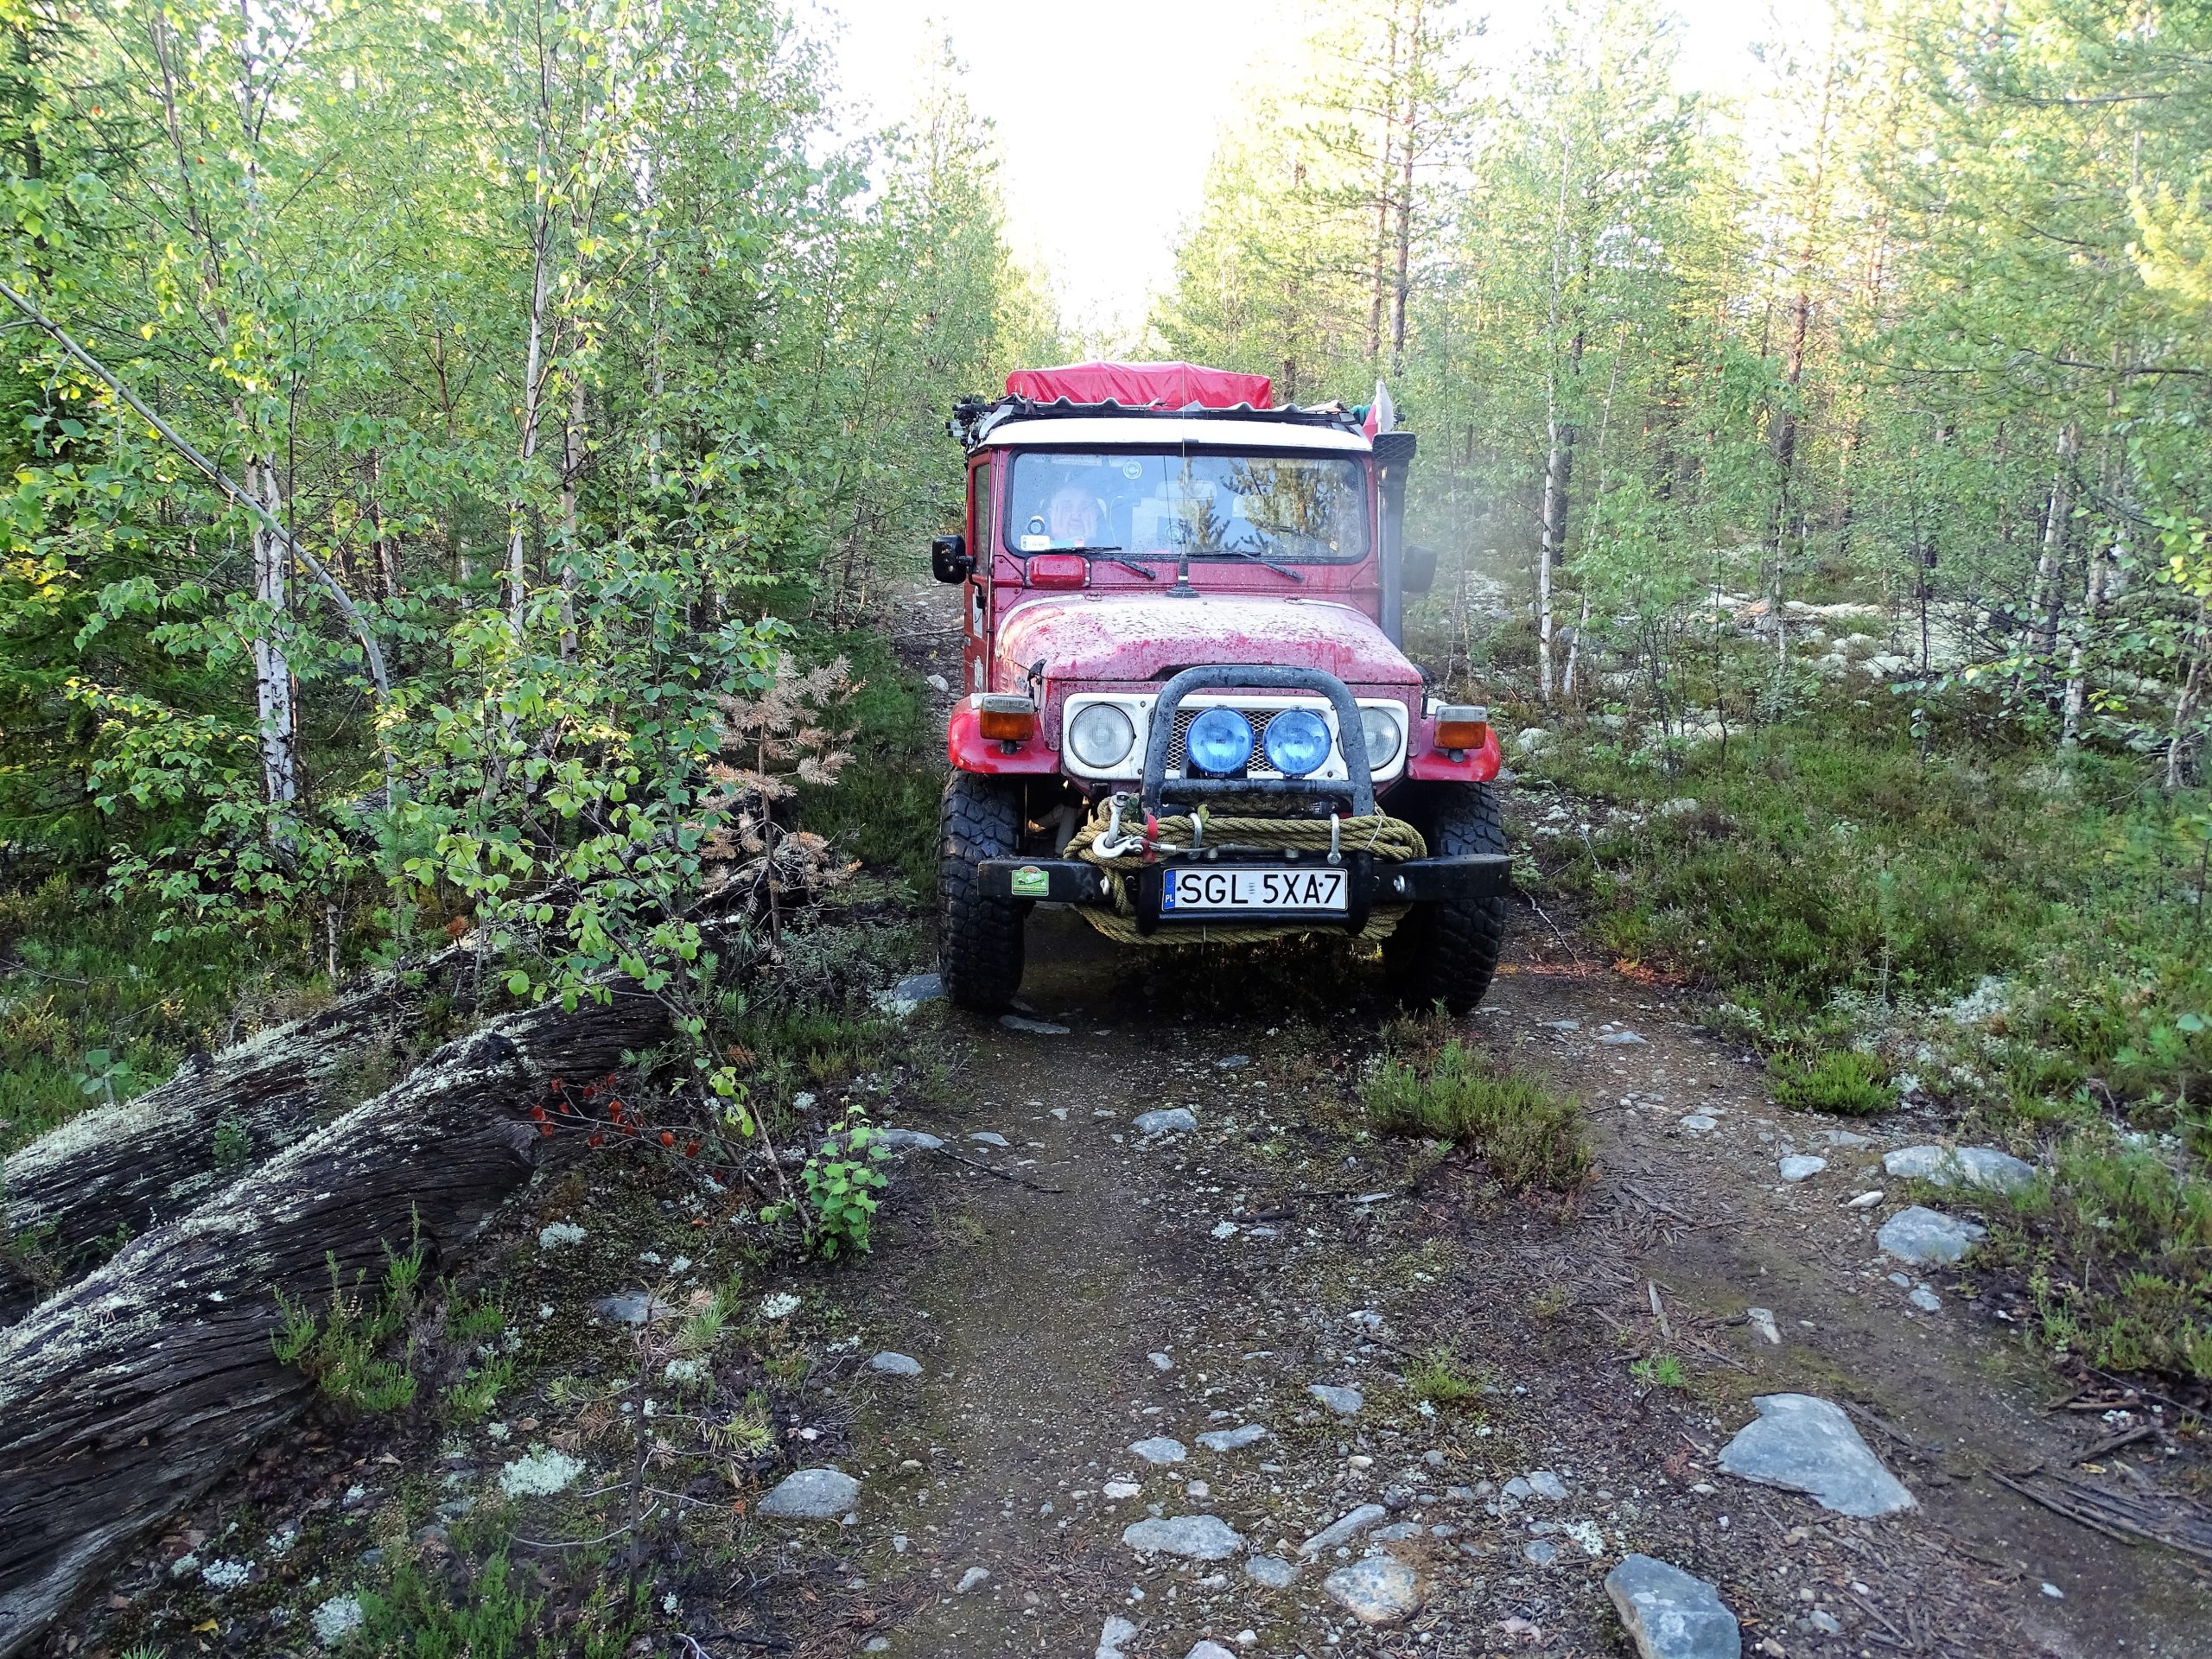 Zdjęcie Piotra Kulczyny z jego wyprawy na północ Rosji. Czerwony samochód terenowy toyota z gliwicką rejestracją stoi w niewysokim, rzadkim lesie z przewagą młodej brzozy.